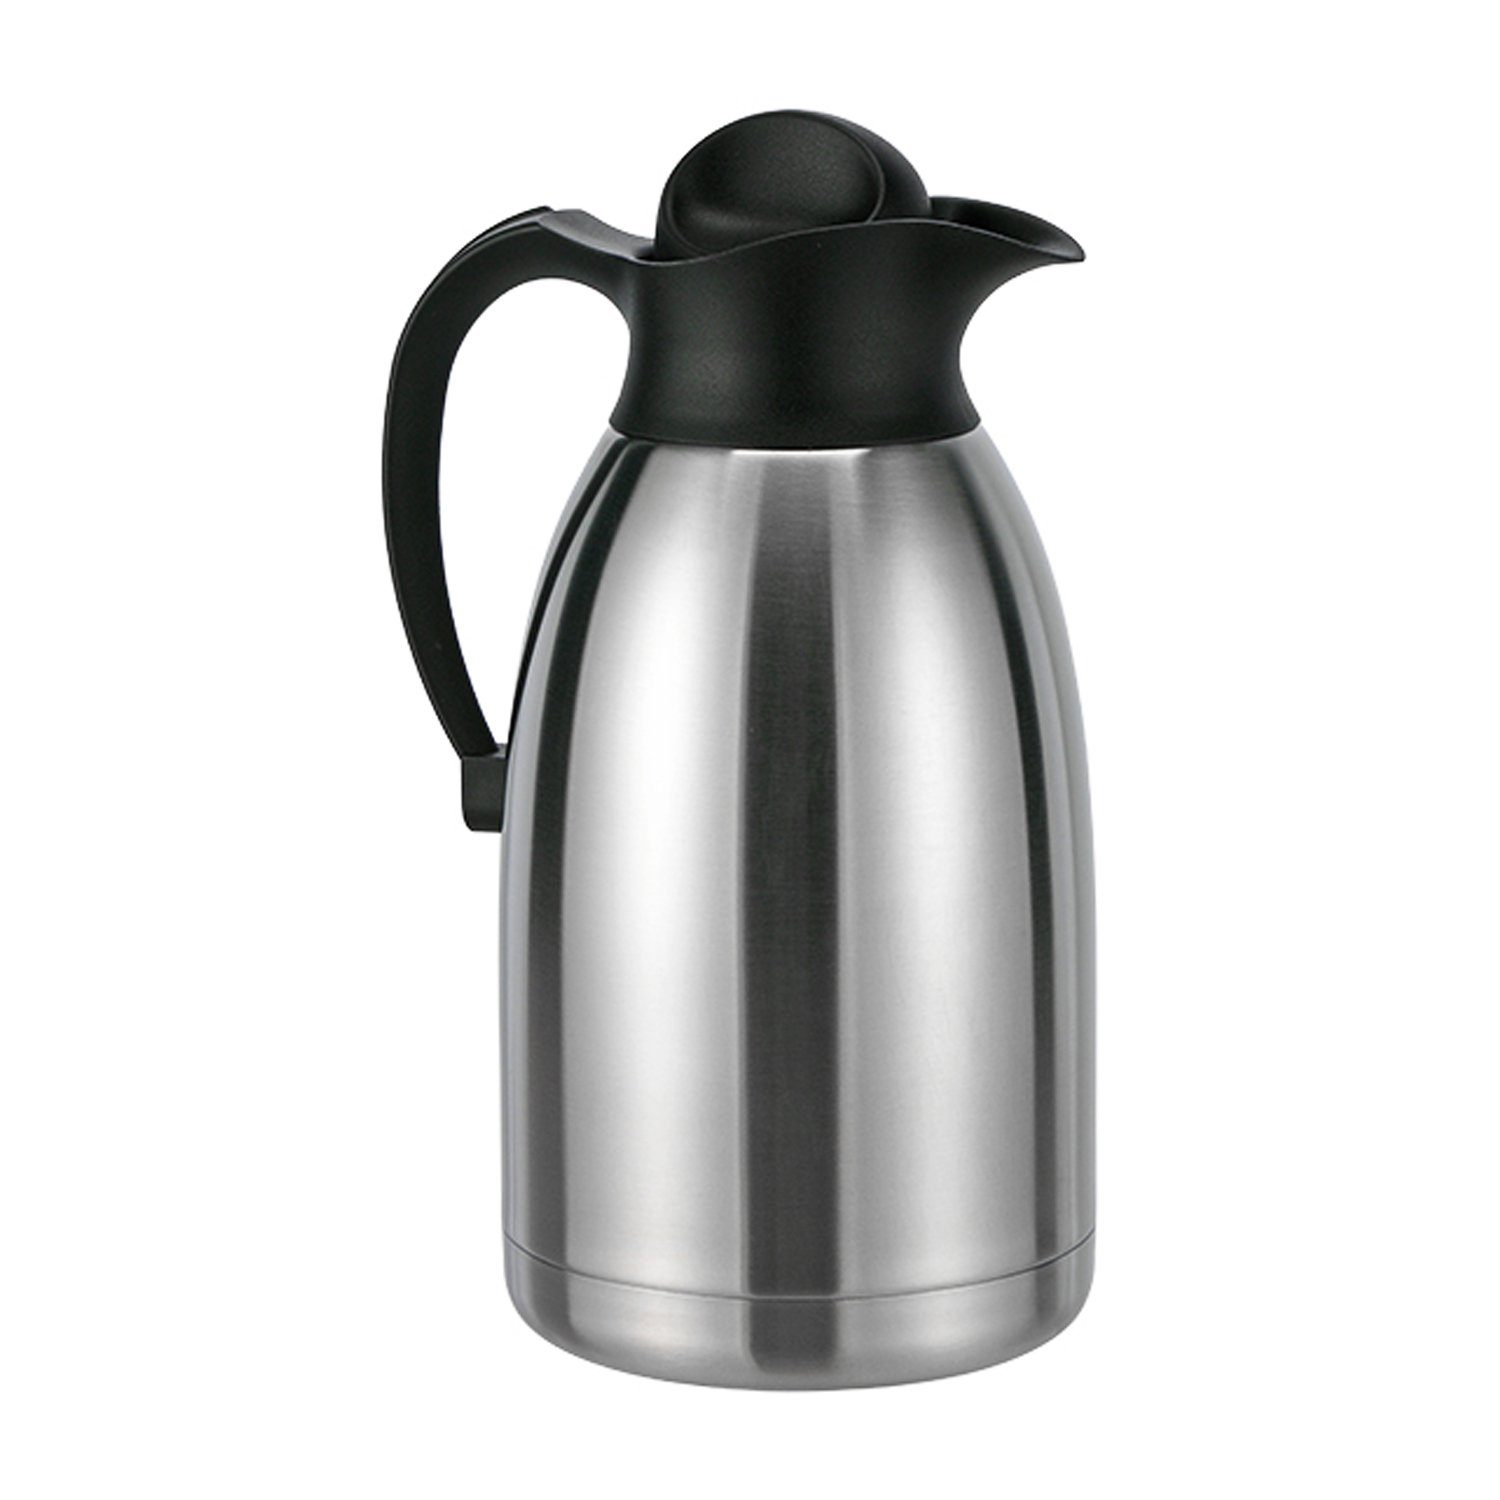 Mojawo Thermobehälter Thermoskanne Liter 2 Edelstahl Isolierkanne Doppelwandig Kaffeekanne